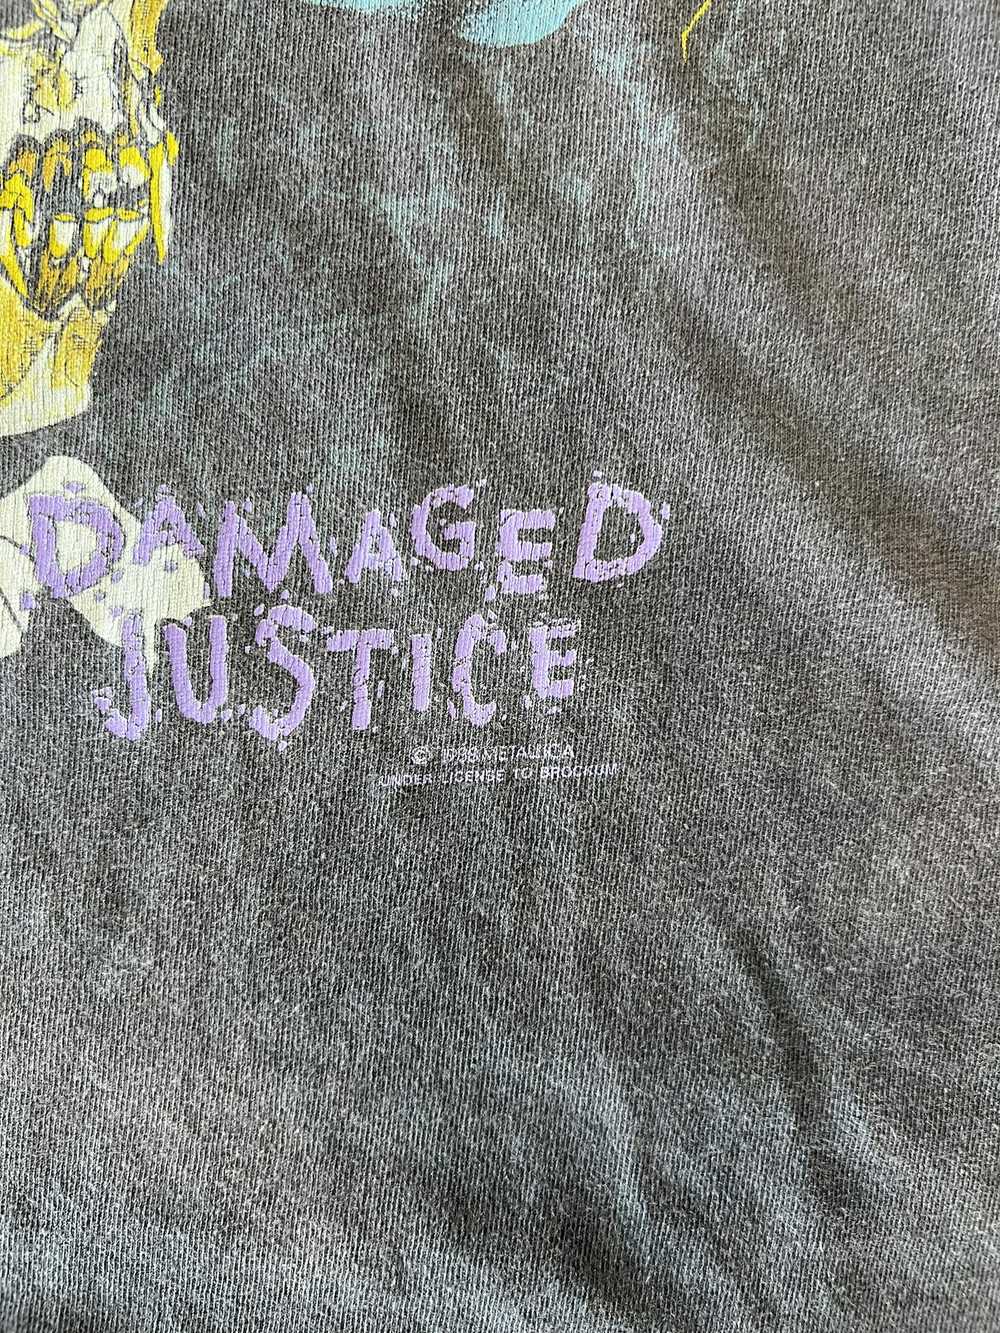 Vintage Vintage metallica damaged justice shirt - image 3